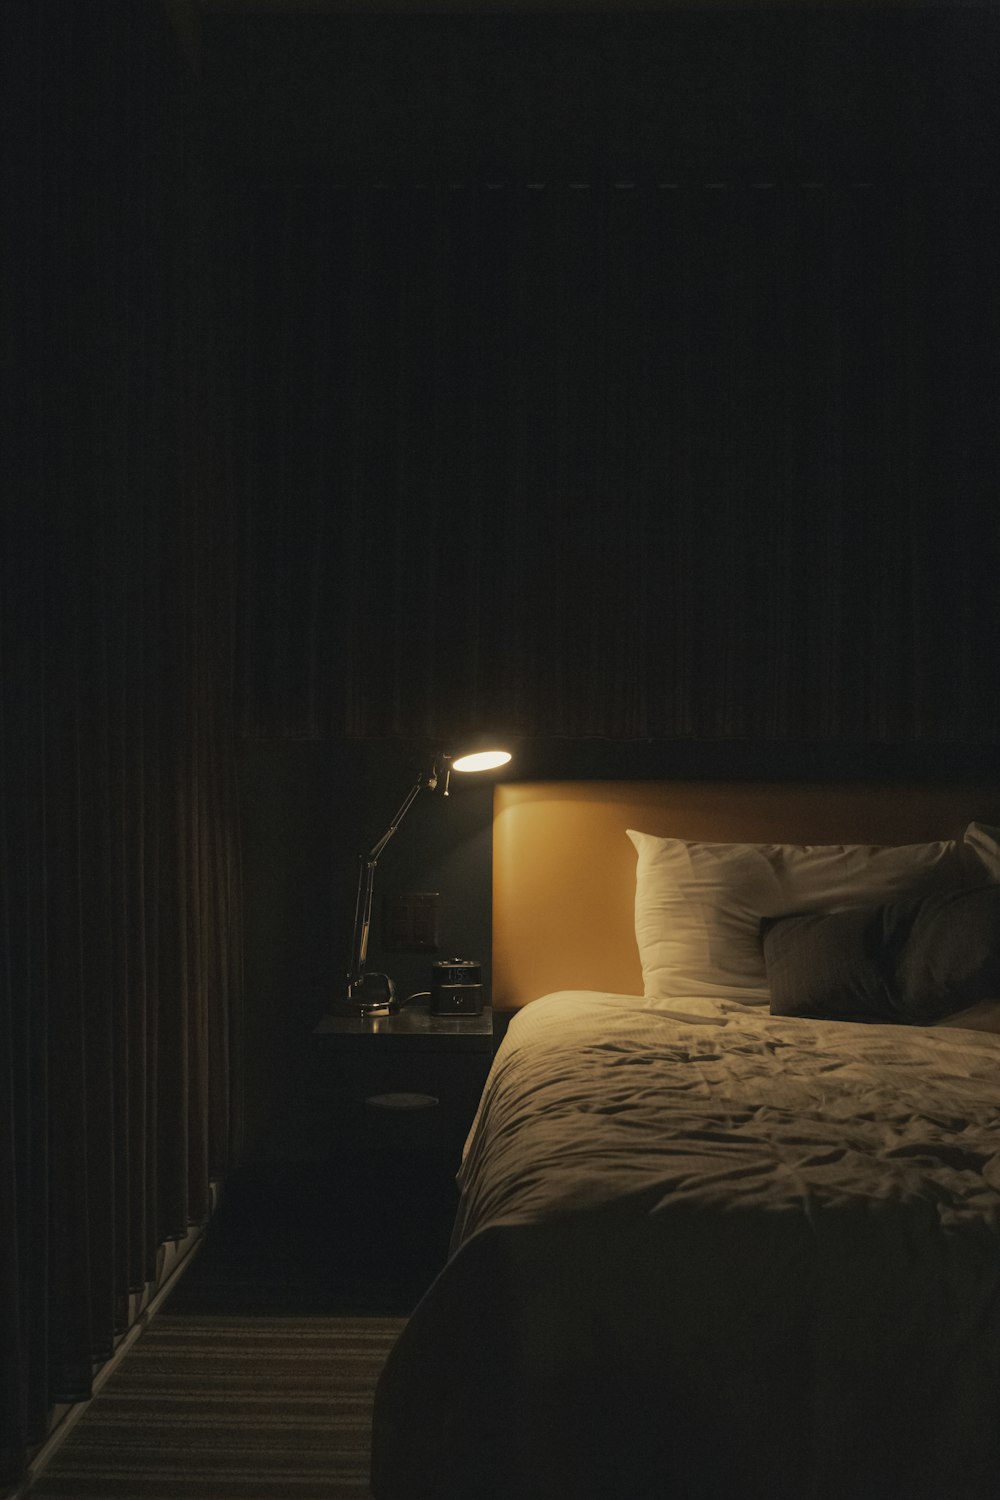 lampada da studio accesa accanto al letto